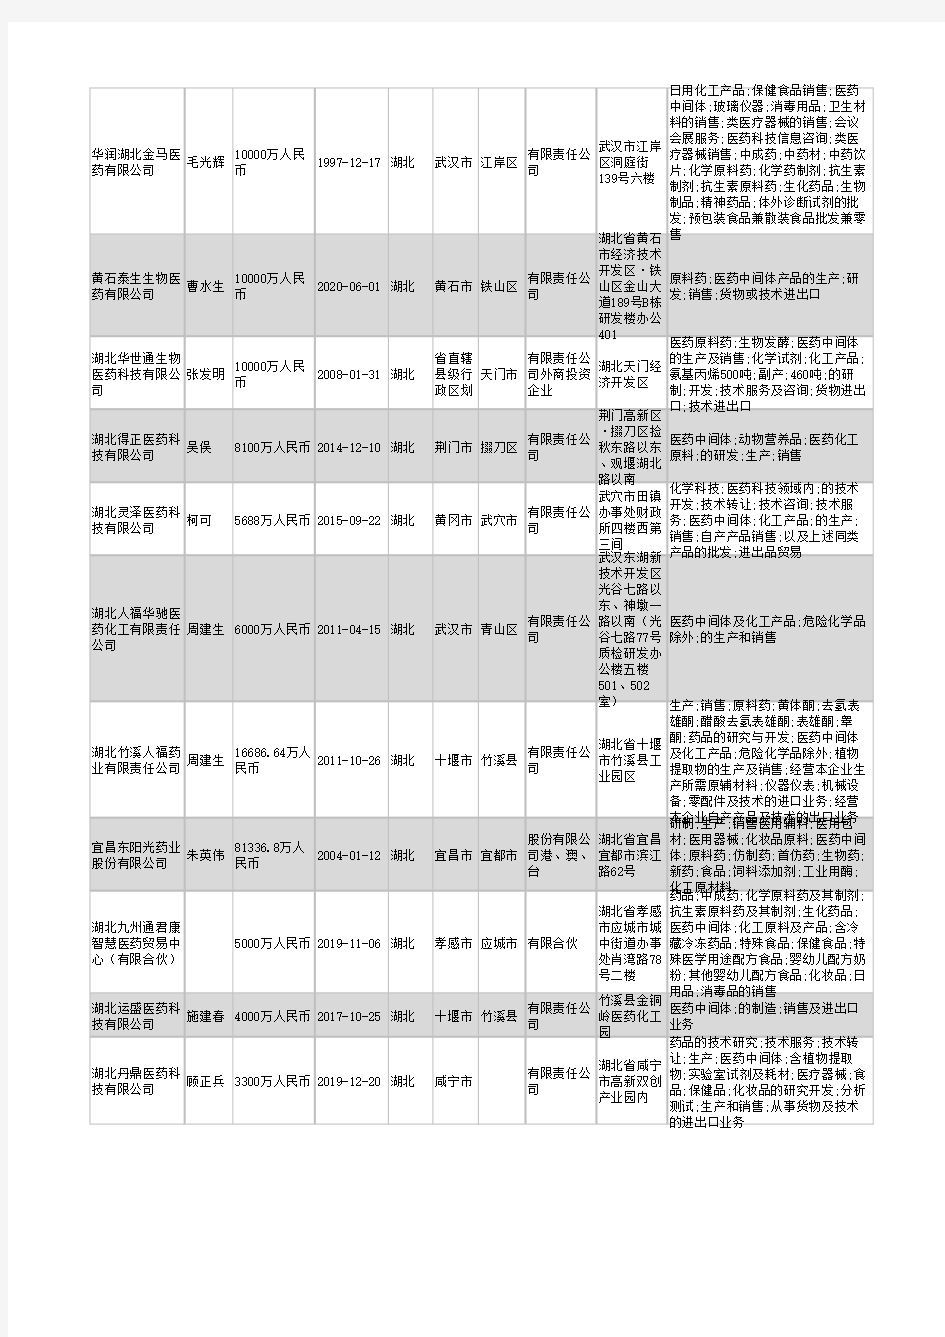 2021年湖北省医药中间体行业企业名录825家